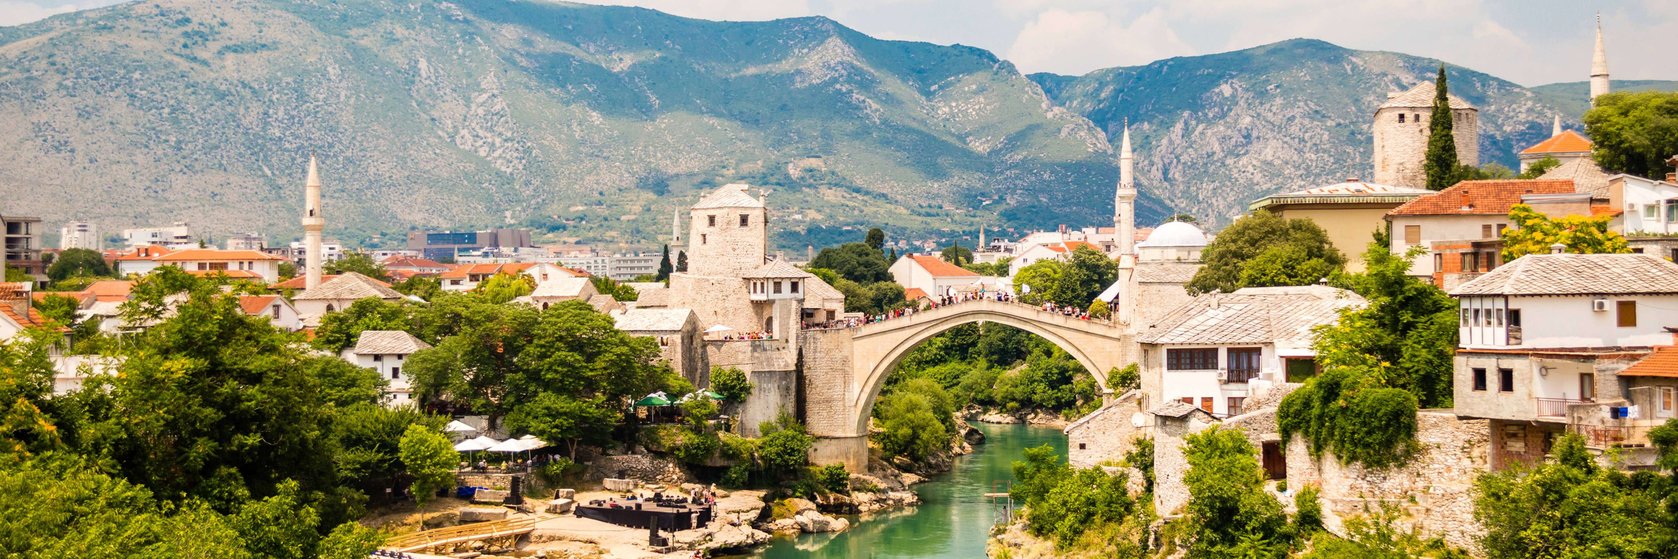 Ubytování Mostar